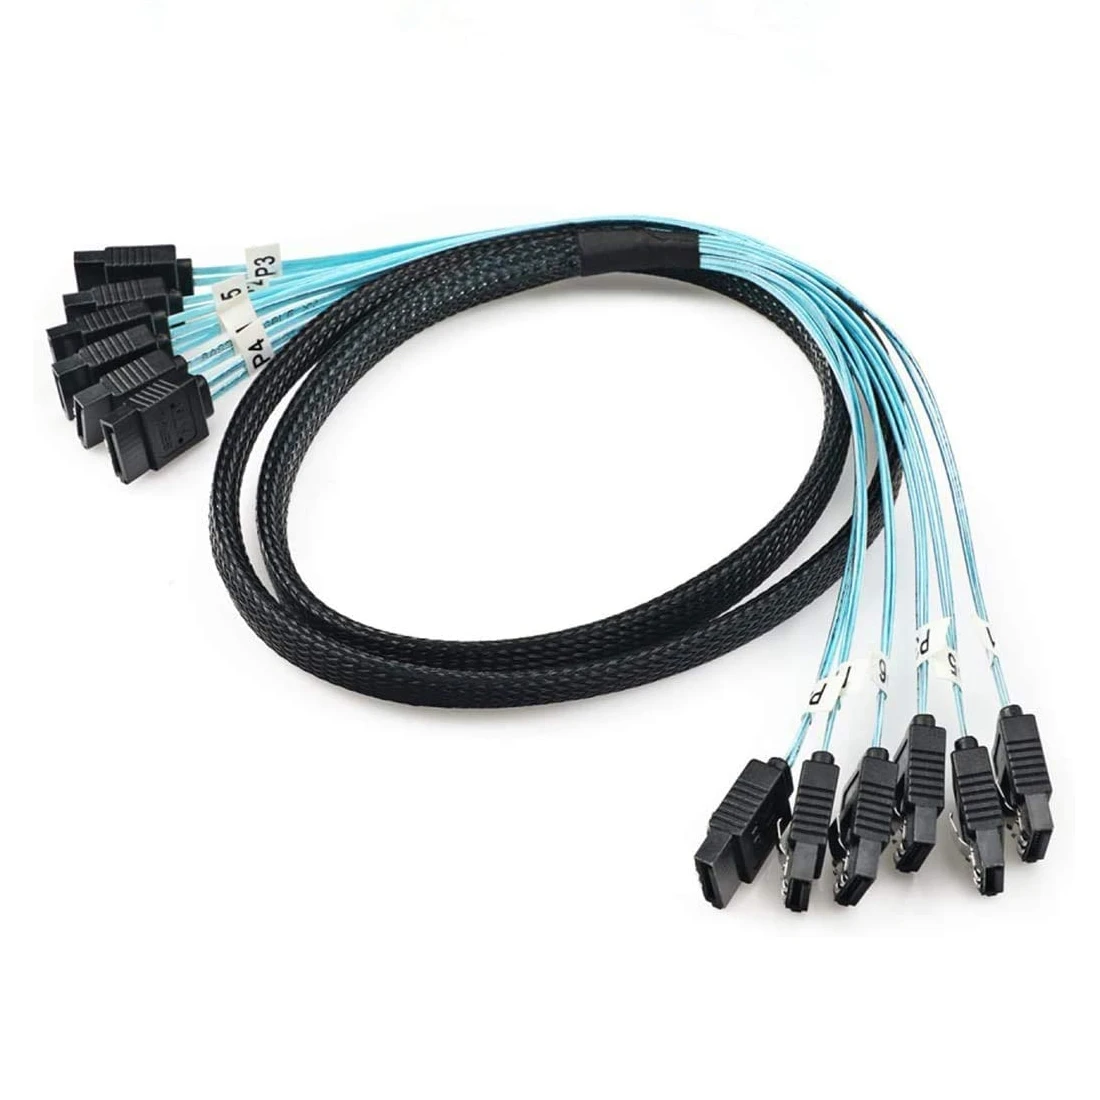 6 pcs/set Sata To Sata Cable 4/6 Ports/Set Date Cable 7 Pin Sata Sas Cable 6Gbps Sata To Sata HDD Cable Cord For Server Mining